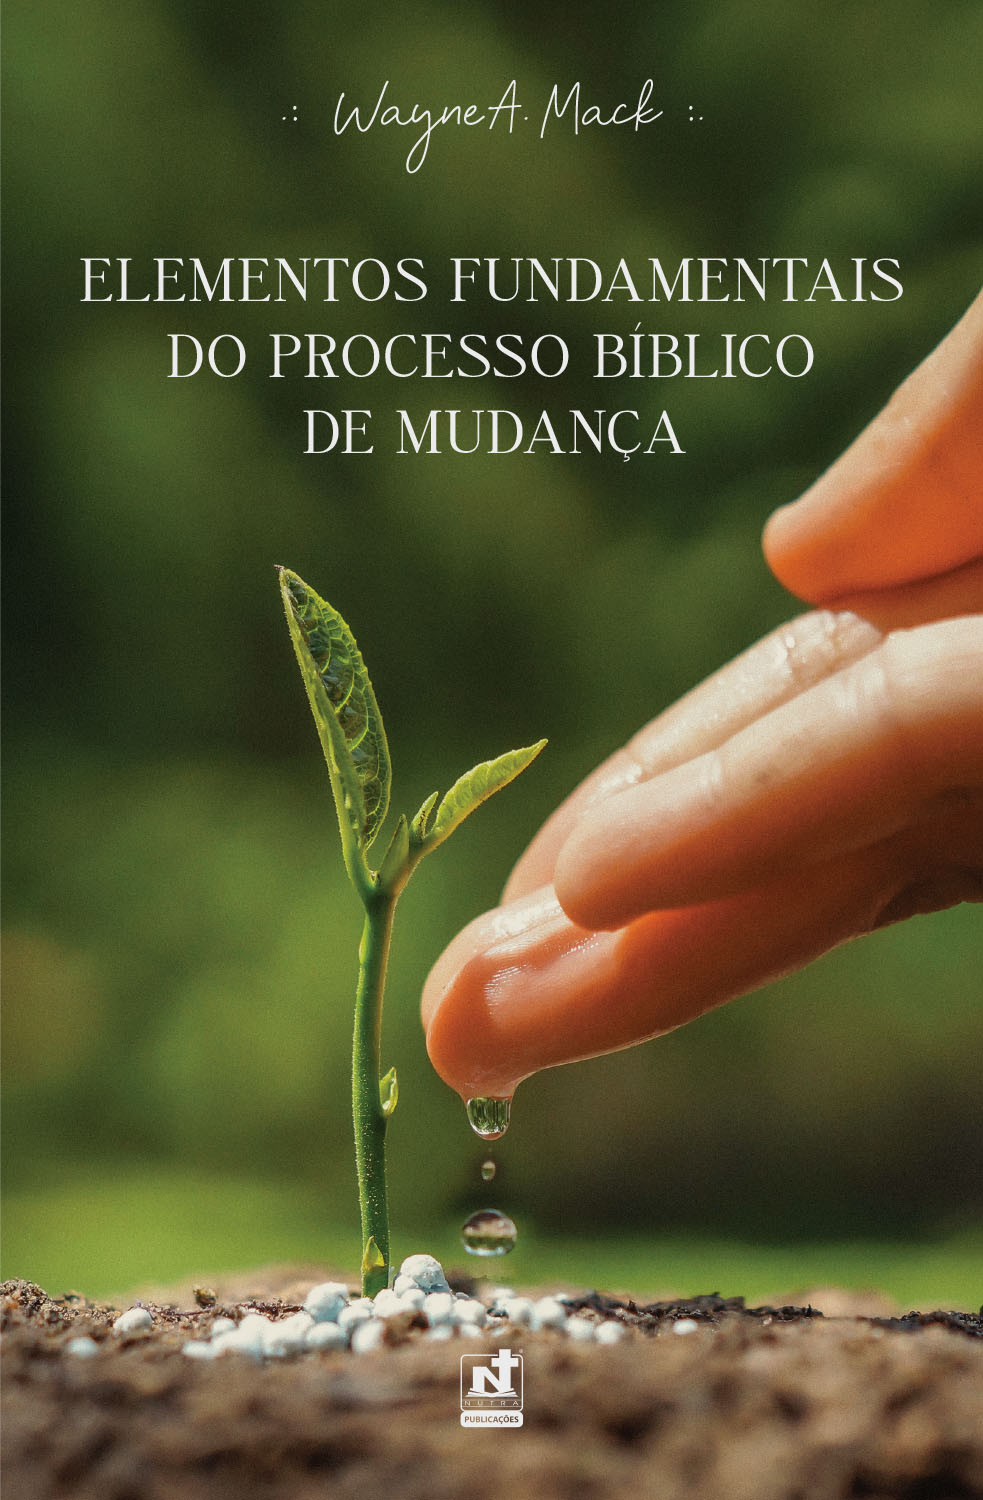 ELEMENTOS FUNDAMENTAIS DO PROCESSO BÍBLICO DE MUDANÇA